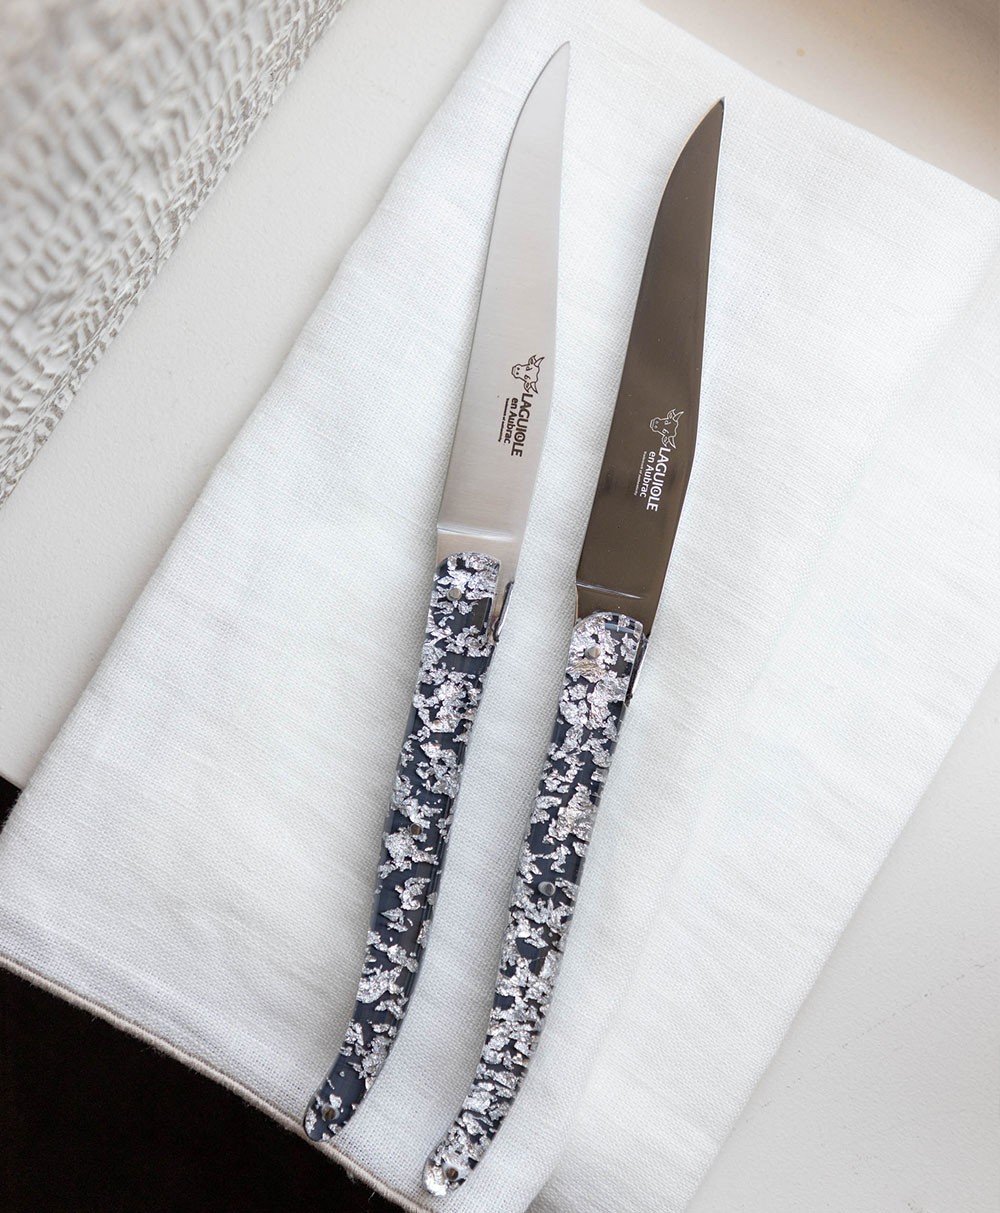 Hier abgebildet ist das Steakmesser-Set Pailletten von Laguiole en Aubrac – im Onlineshop RAUm concept store